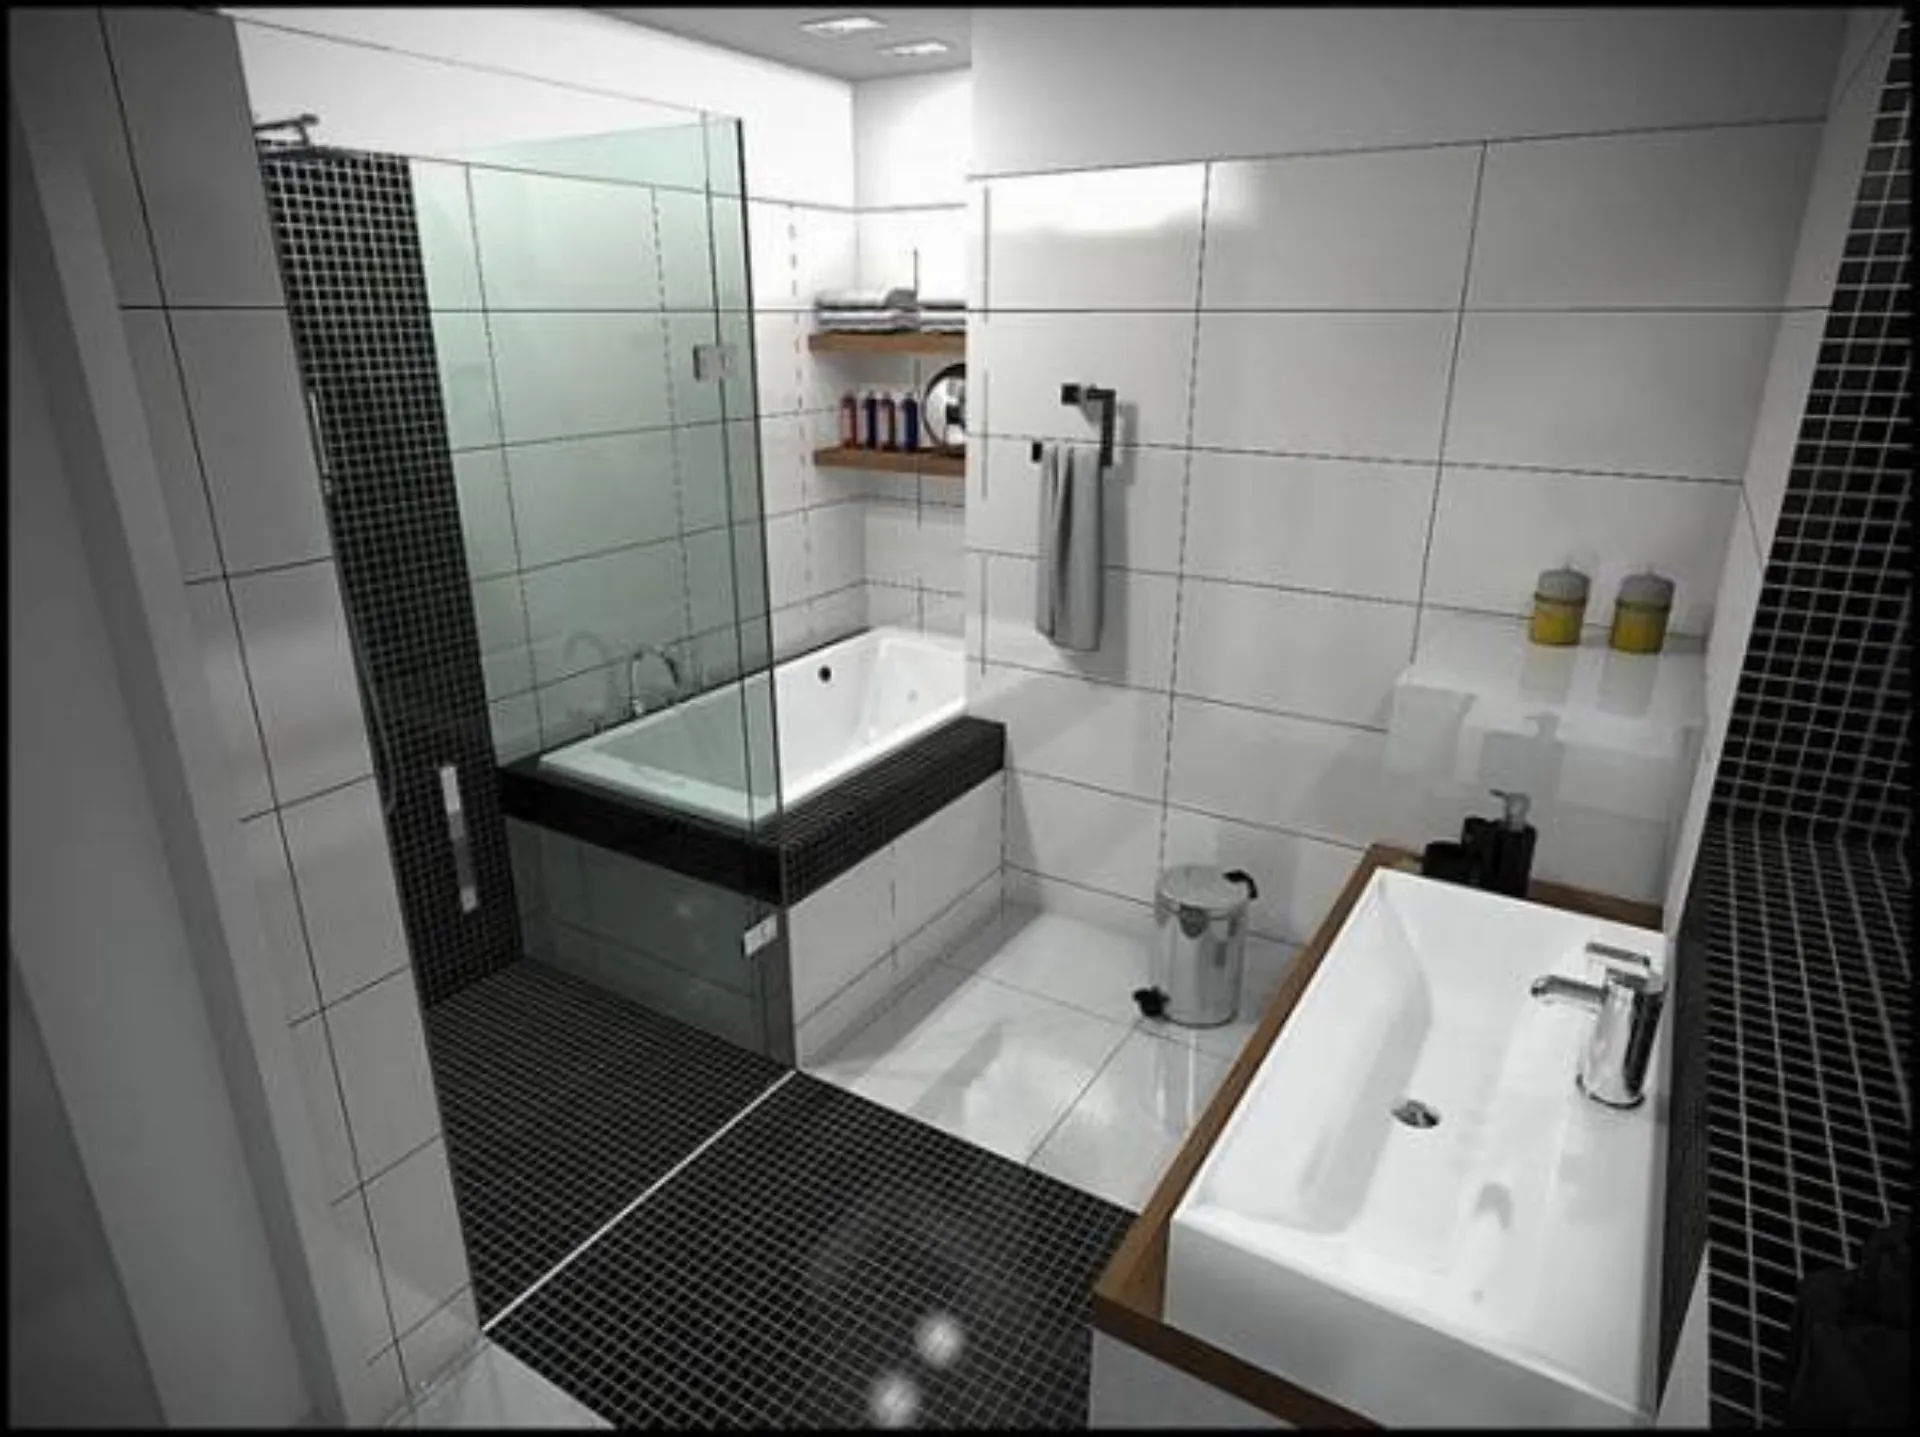 Ванная комната дизайн мал размер. Черно белая ванная. Черная плитка в ванной комнате. Небольшая ванная комната. Интерьер маленькой ванной комнаты.